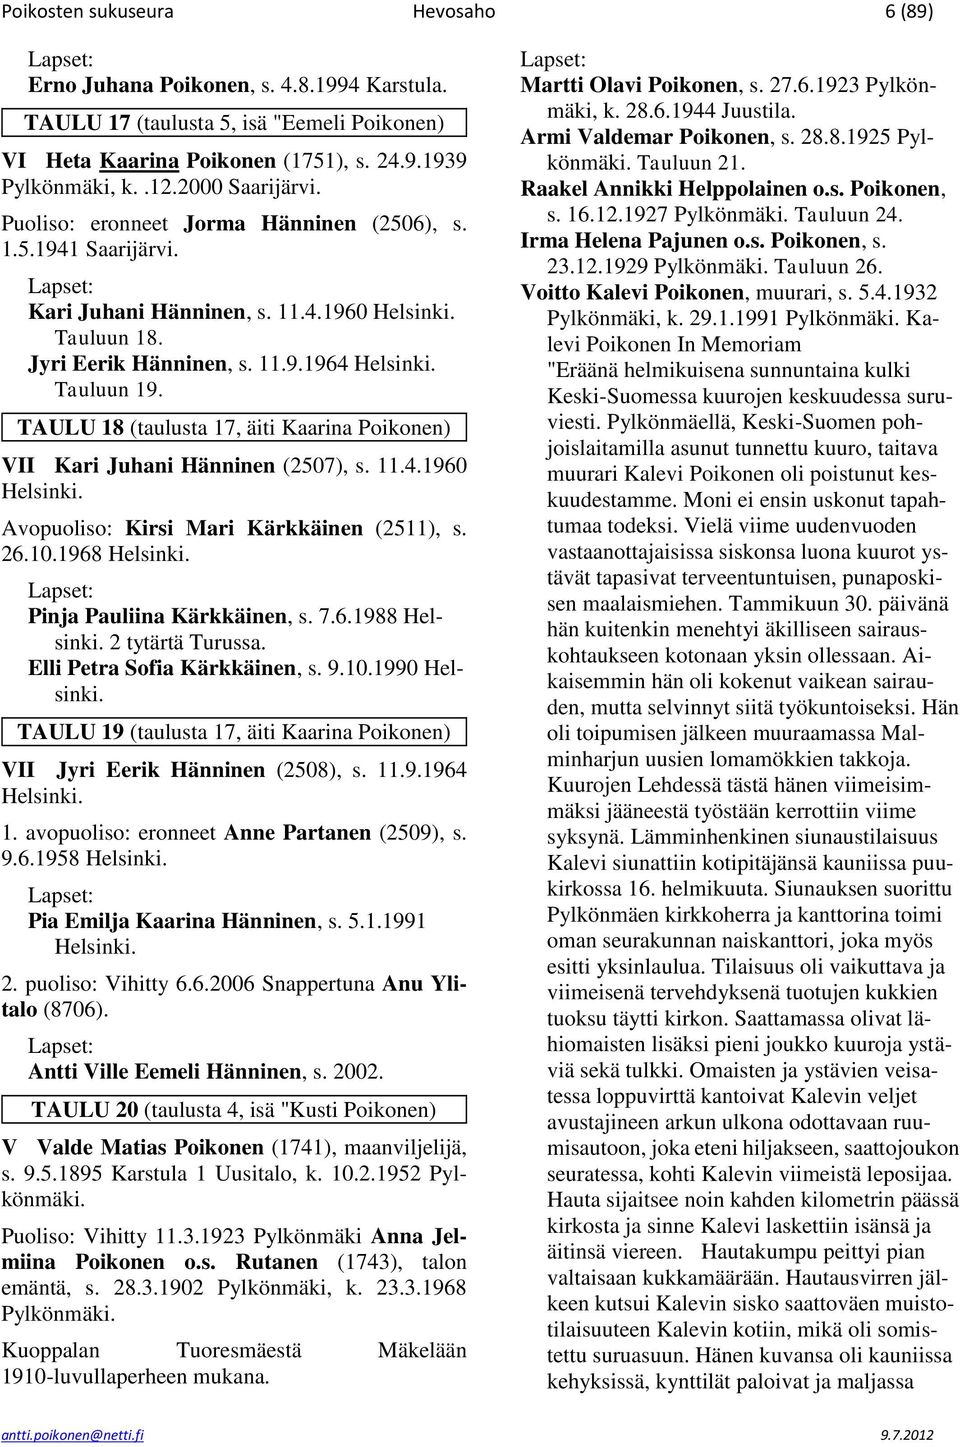 TAULU 18 (taulusta 17, äiti Kaarina Poikonen) VII Kari Juhani Hänninen (2507), s. 11.4.1960 Helsinki. Avopuoliso: Kirsi Mari Kärkkäinen (2511), s. 26.10.1968 Helsinki. Pinja Pauliina Kärkkäinen, s. 7.